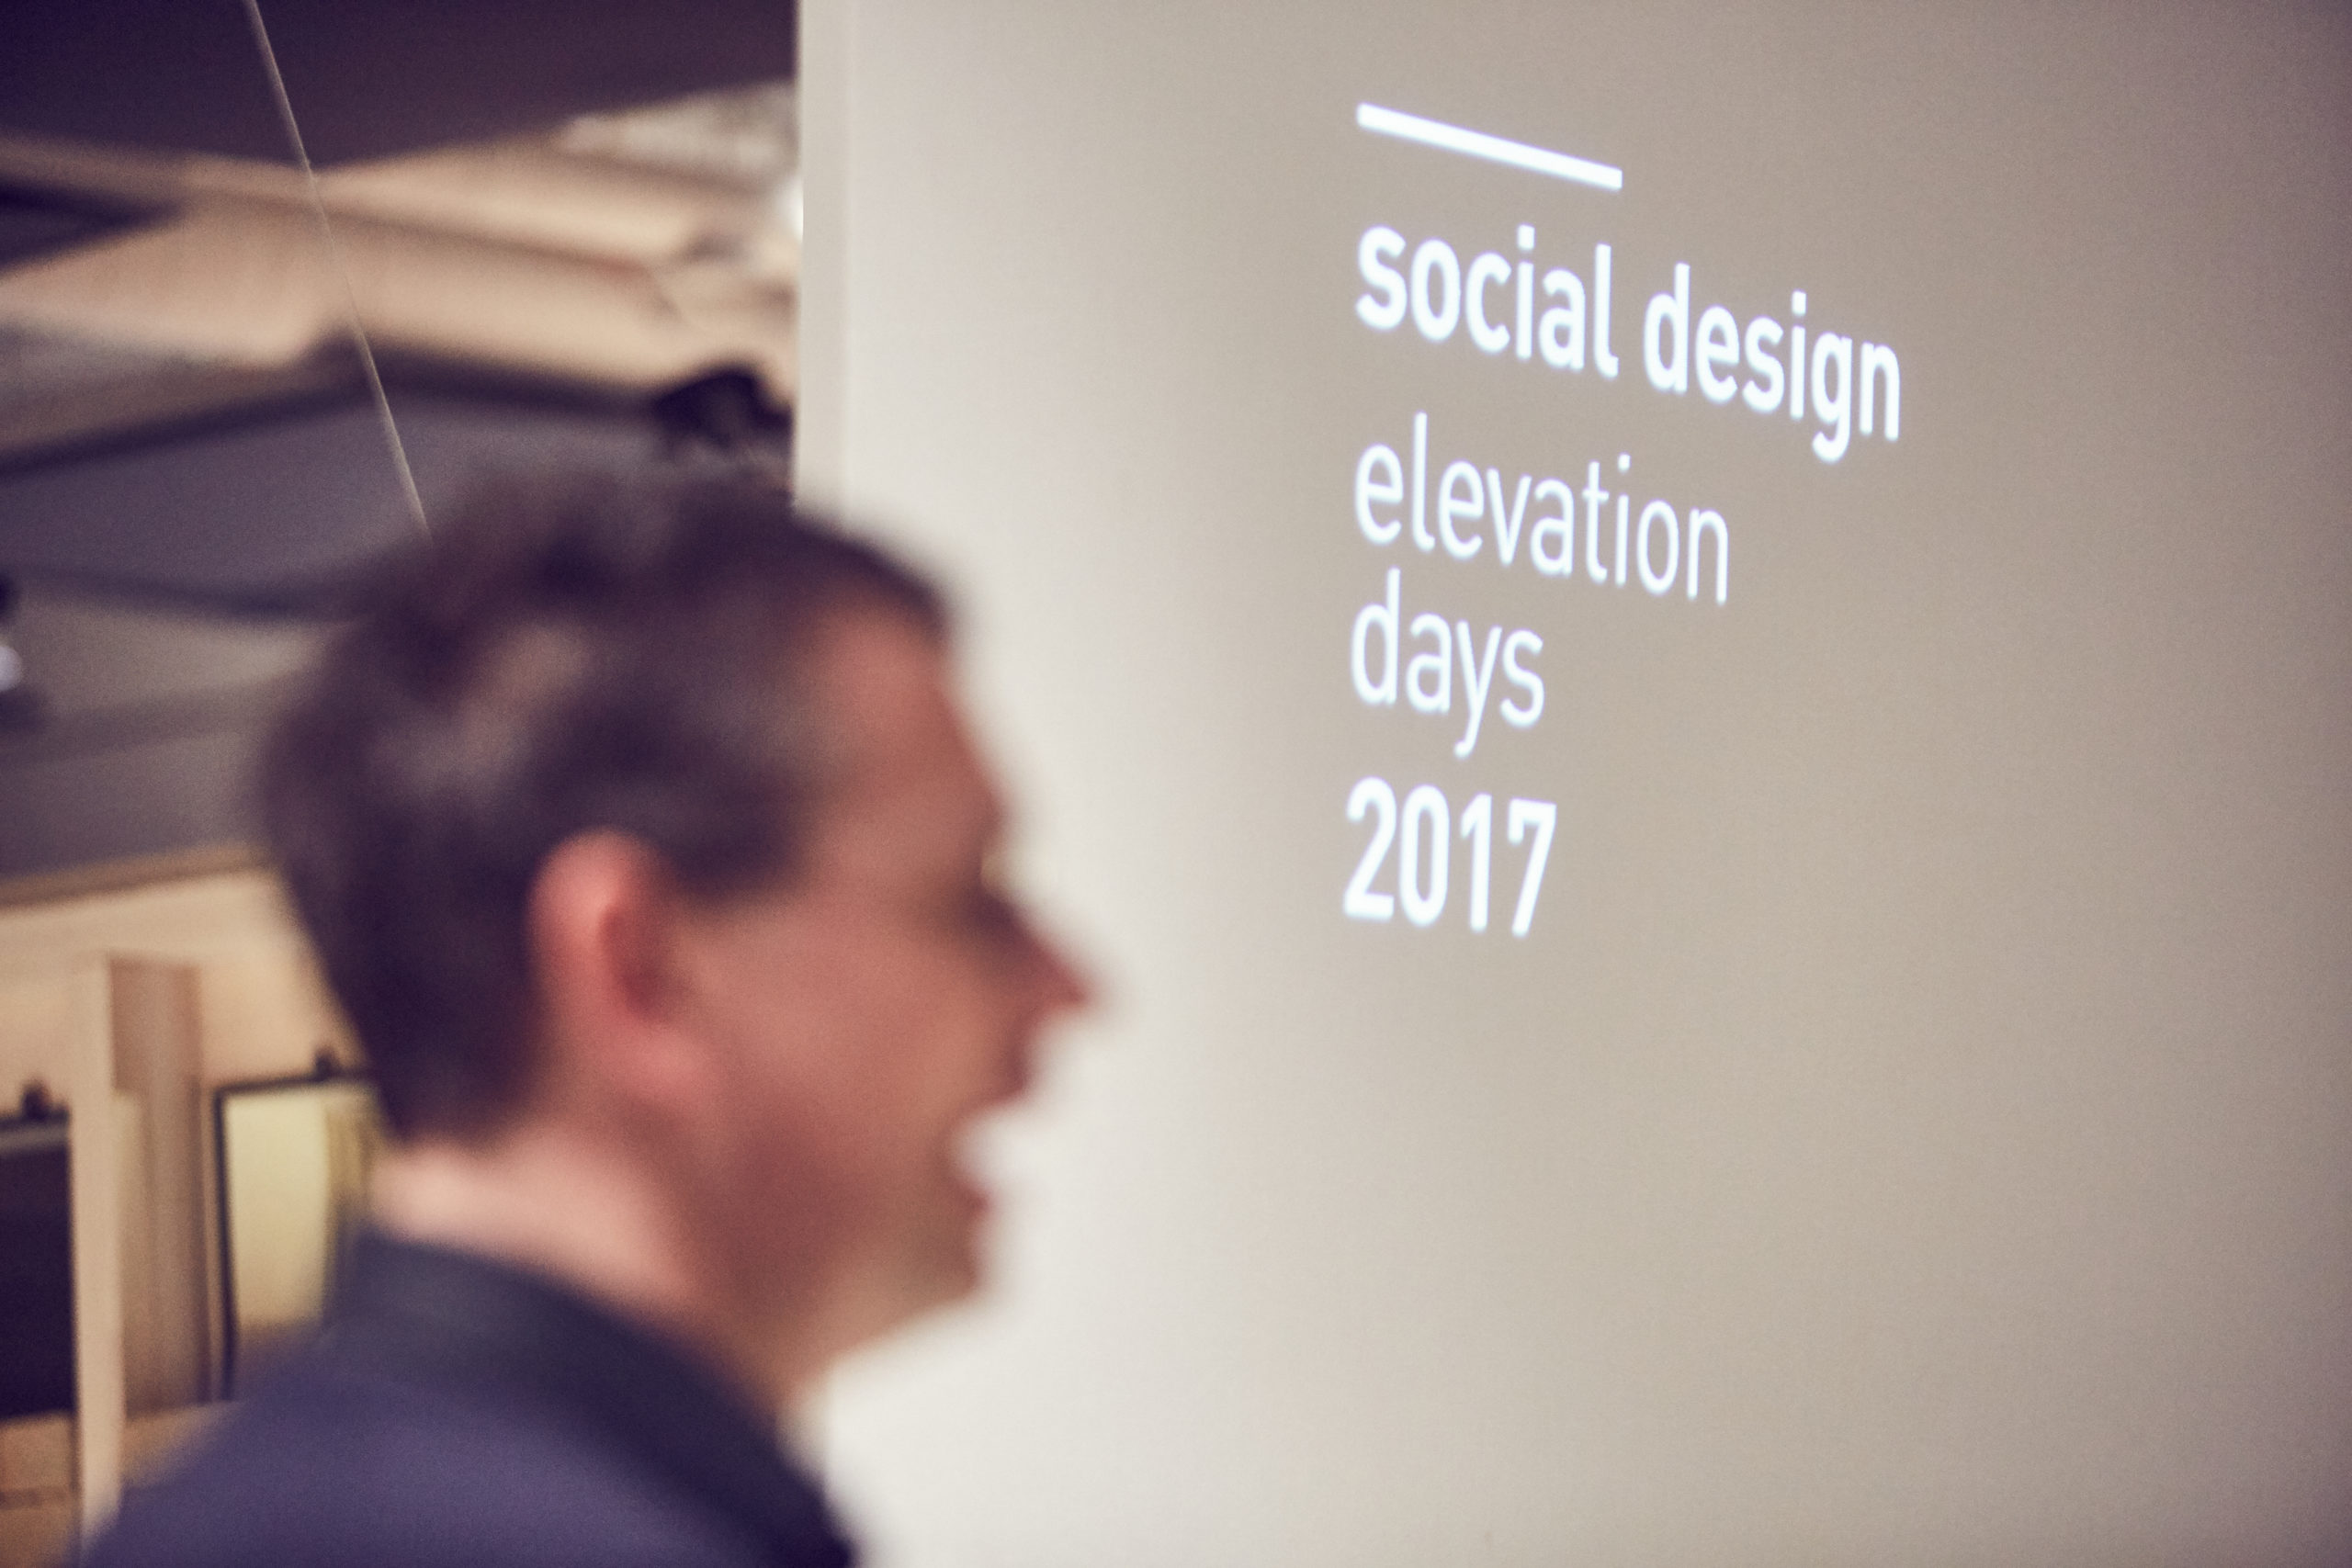 Social design elevation days 2017